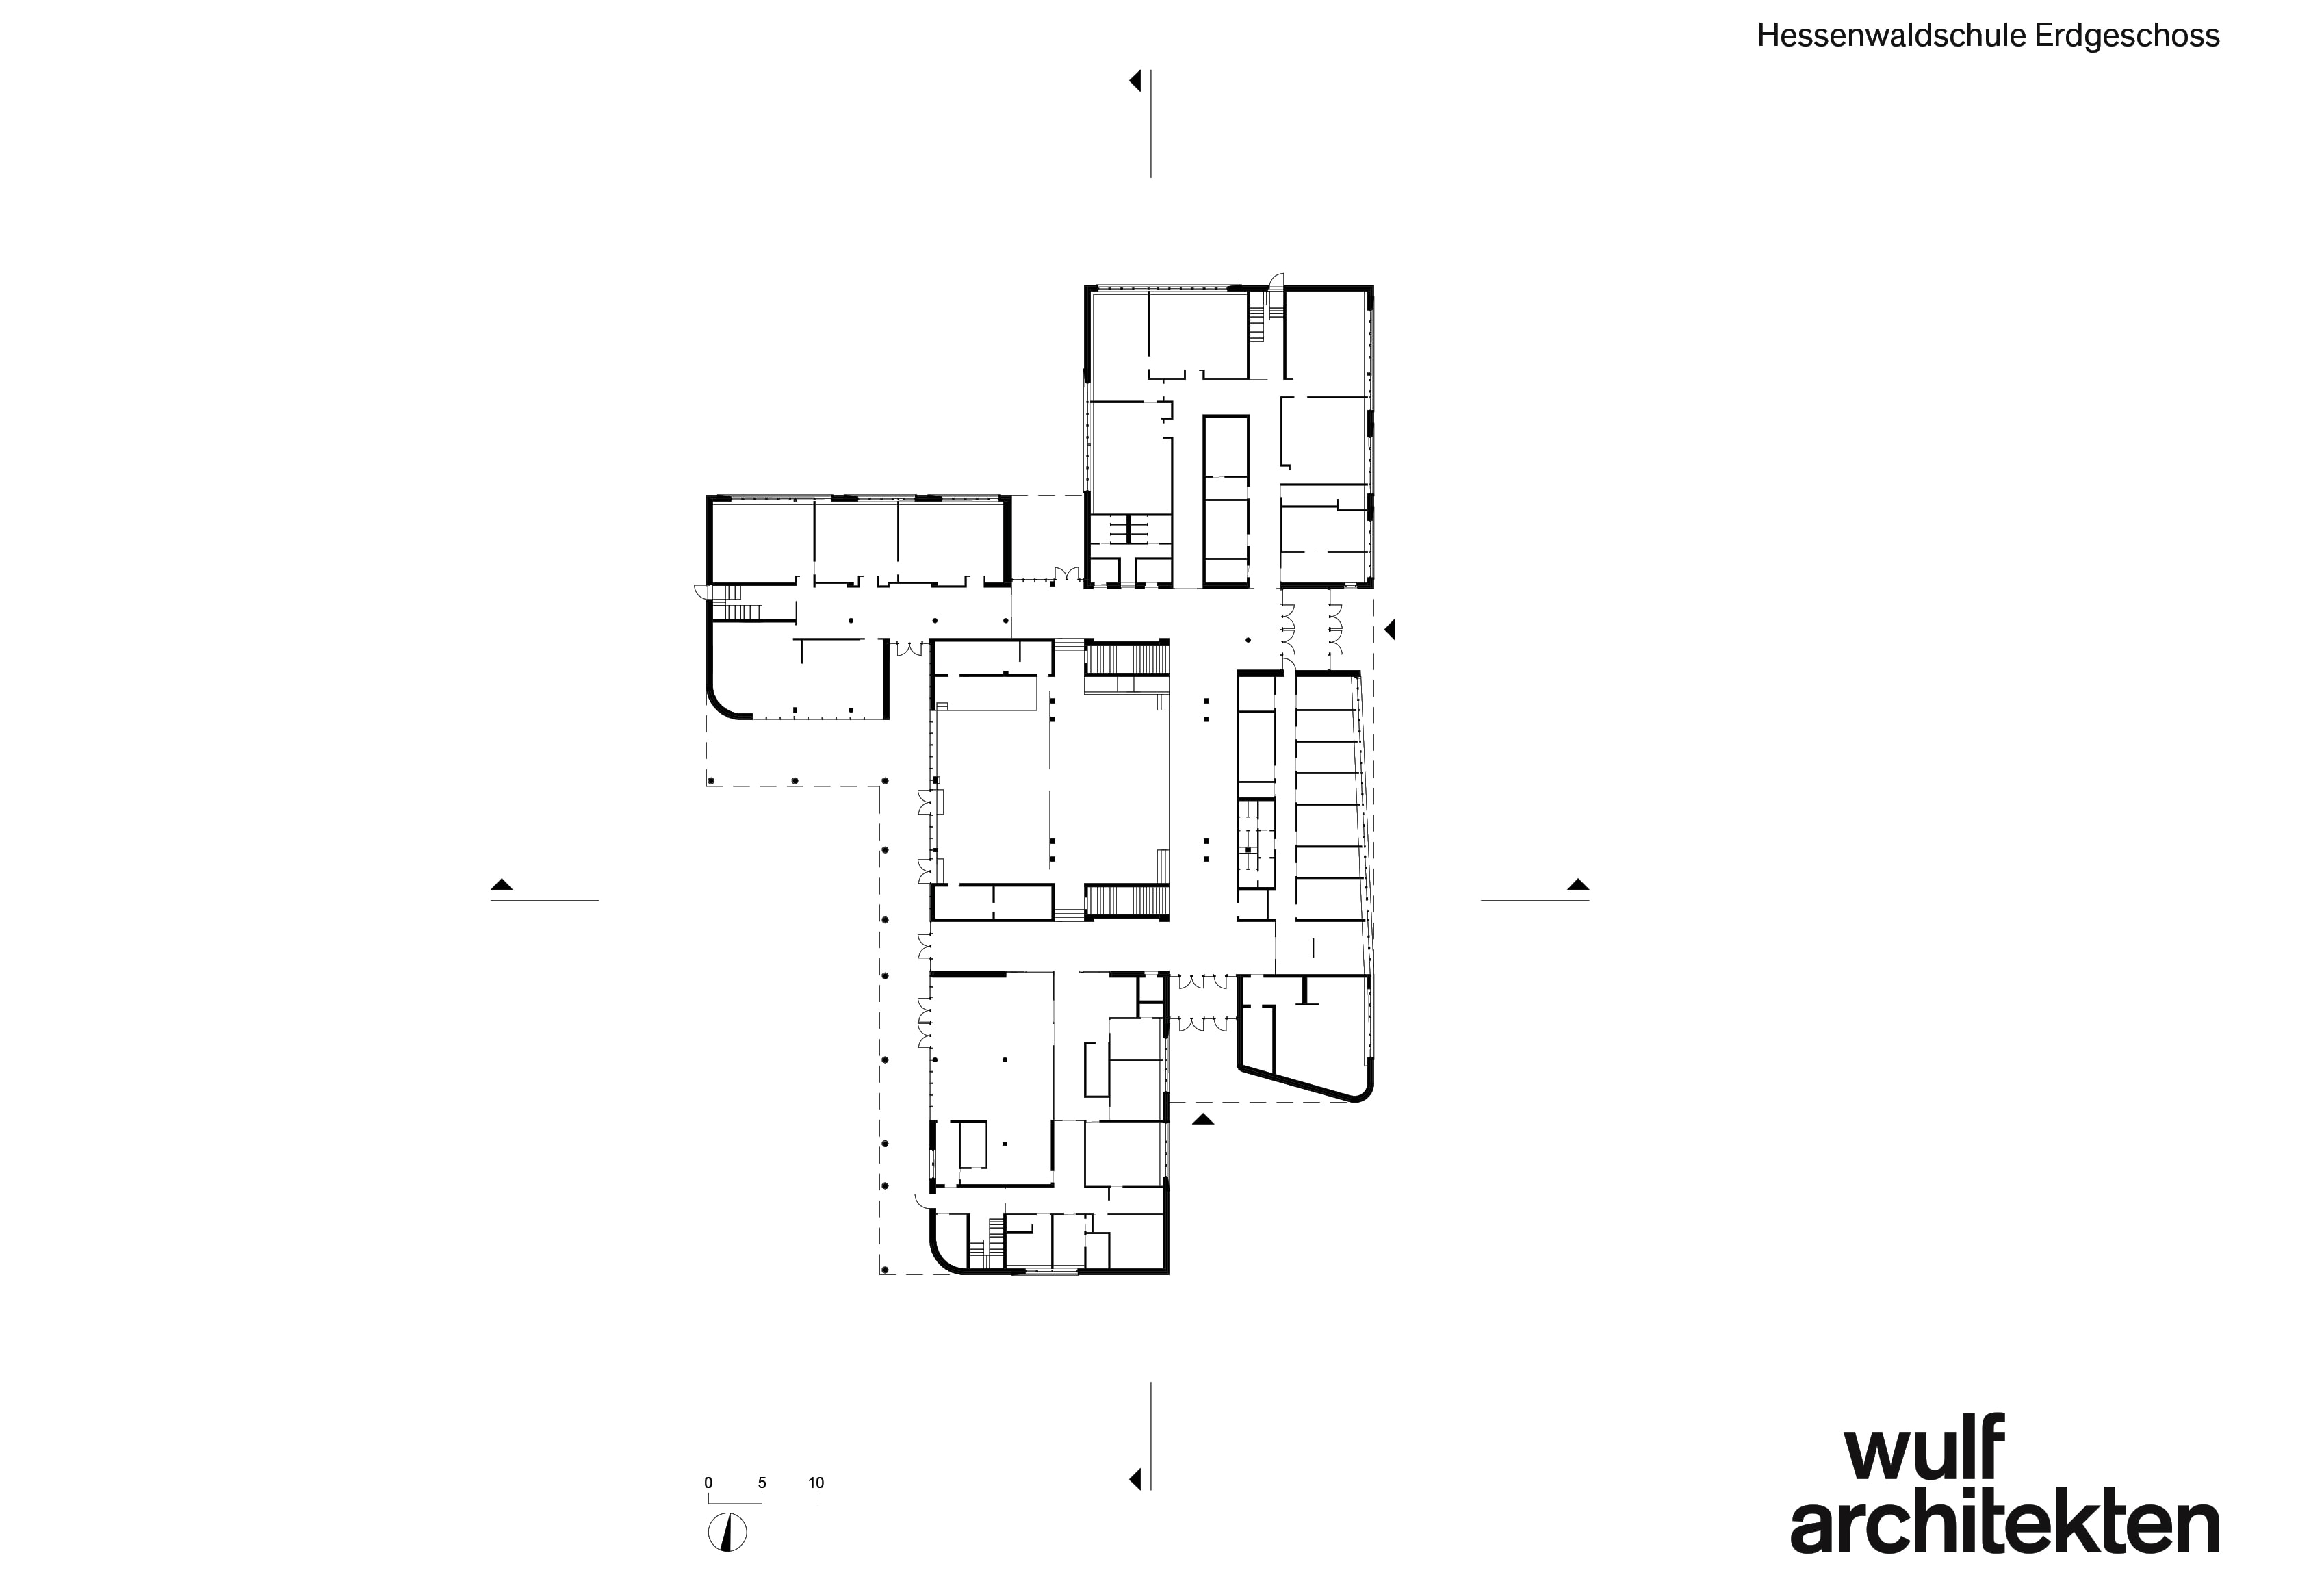 黑森瓦尔德学校-沃尔夫建筑事务所的建筑图纸